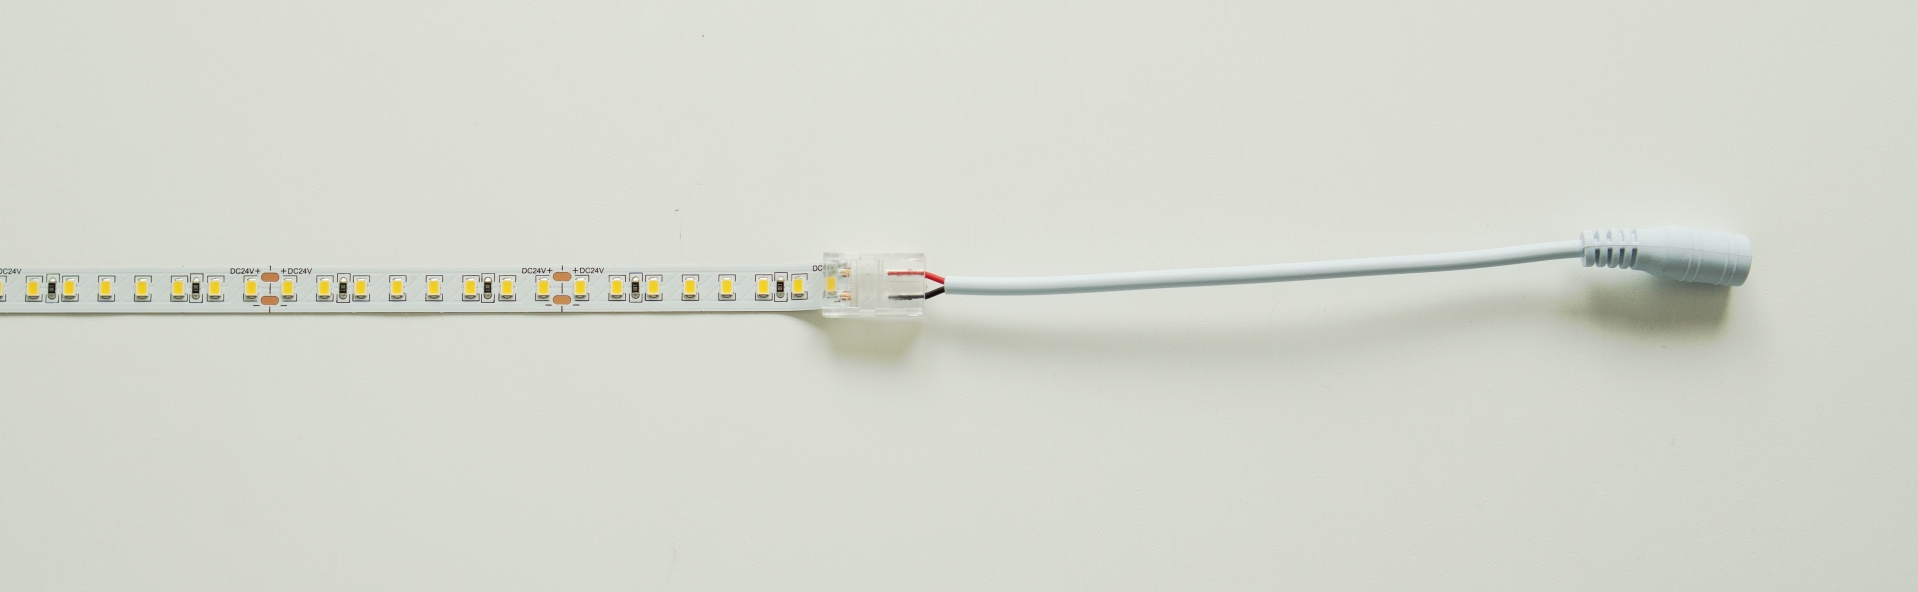 Schéma zapojenia LED pásikov pomocou obojstranného konektora so zásuvkou